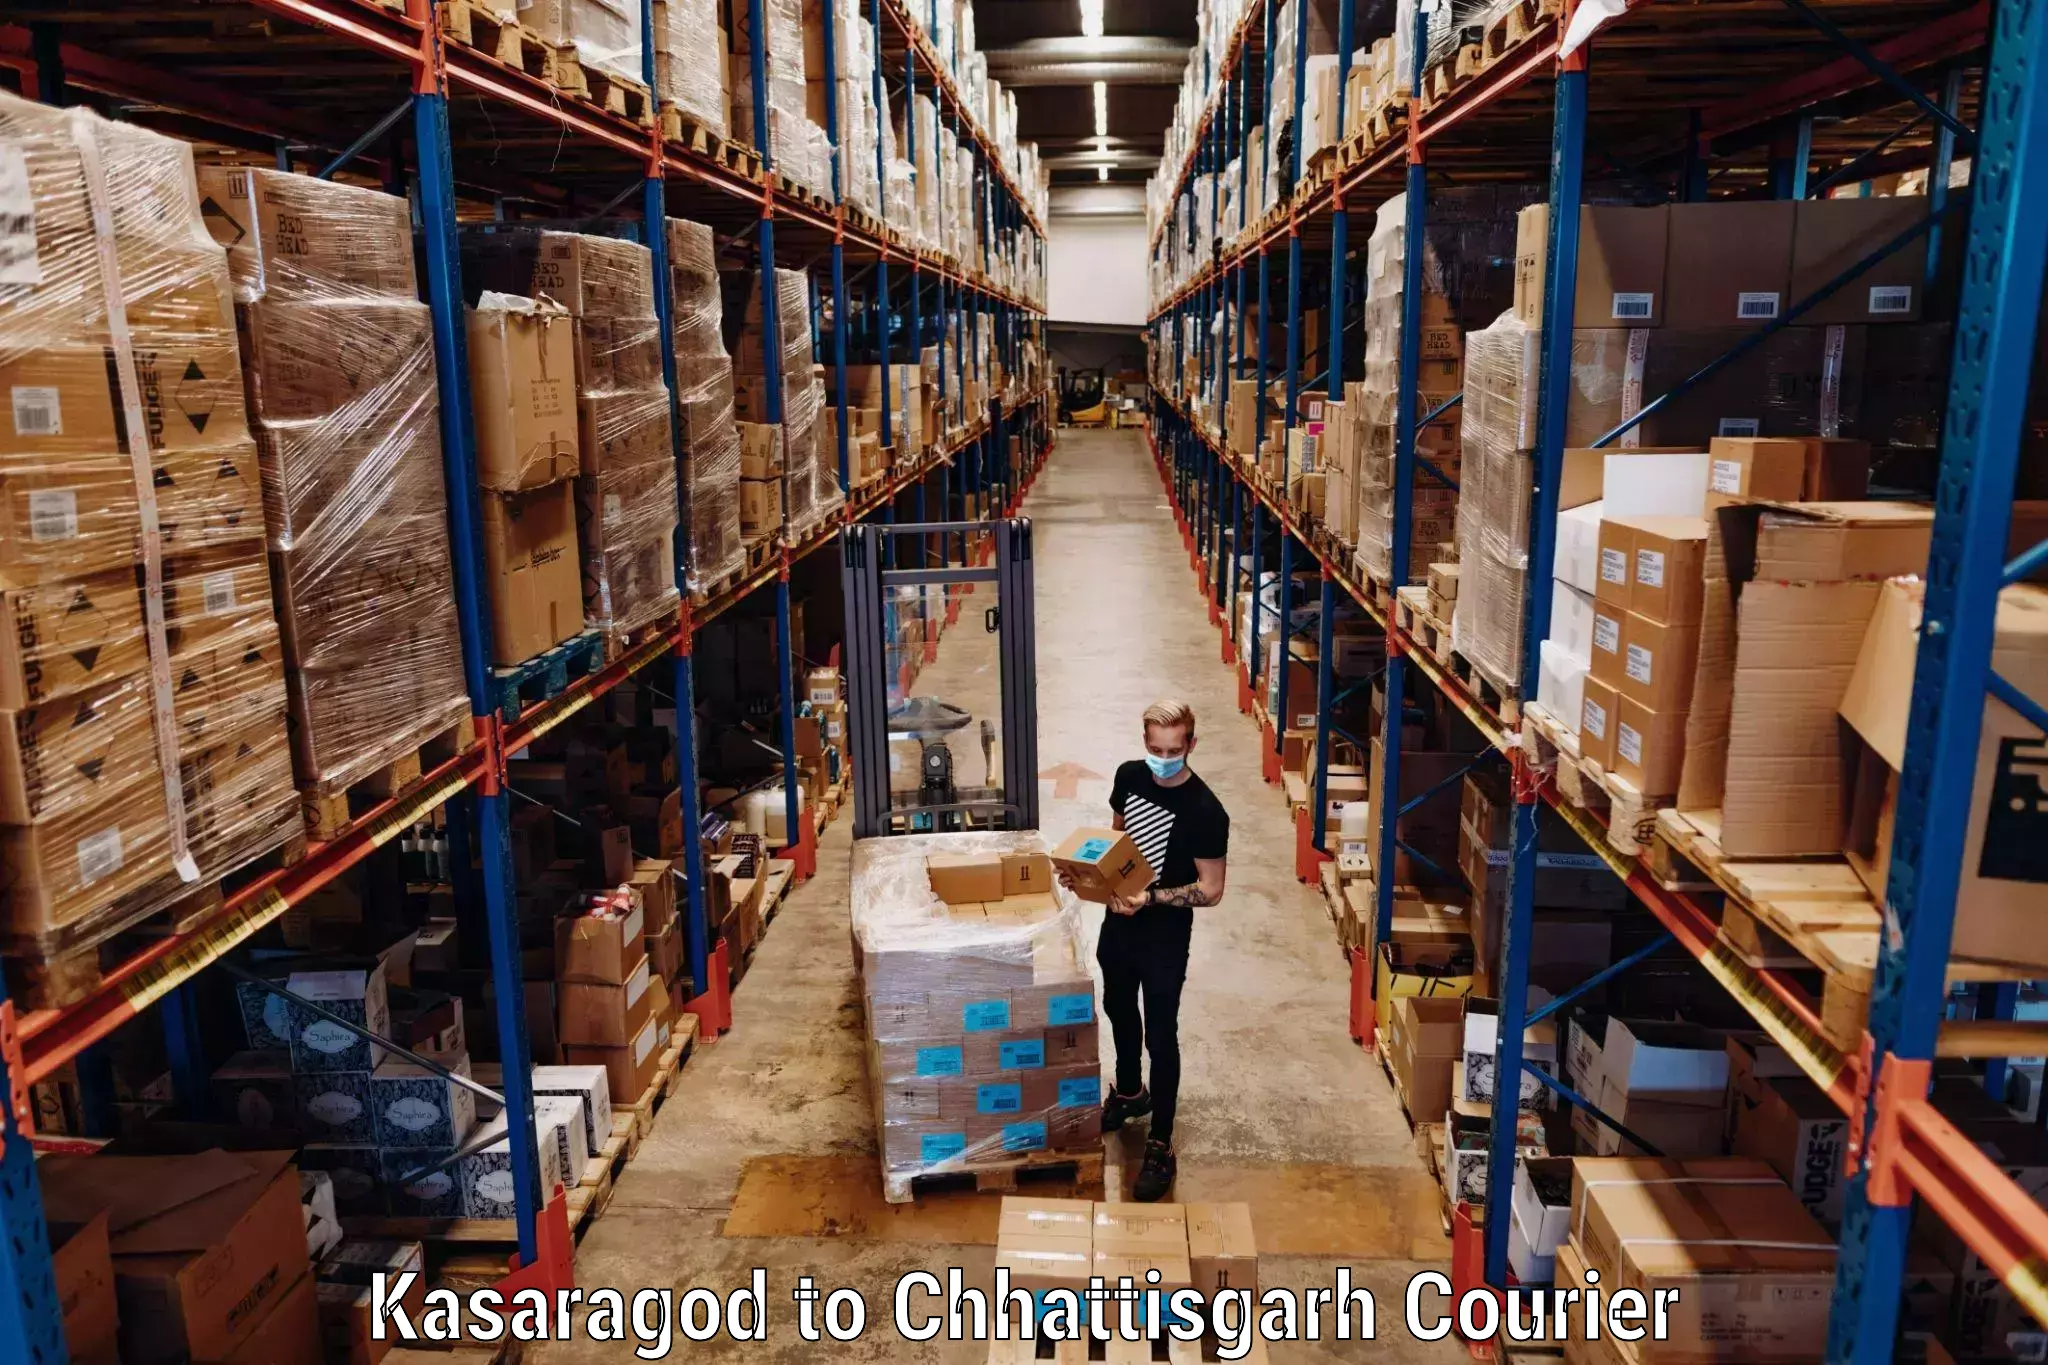 Baggage shipping experts Kasaragod to Pathalgaon